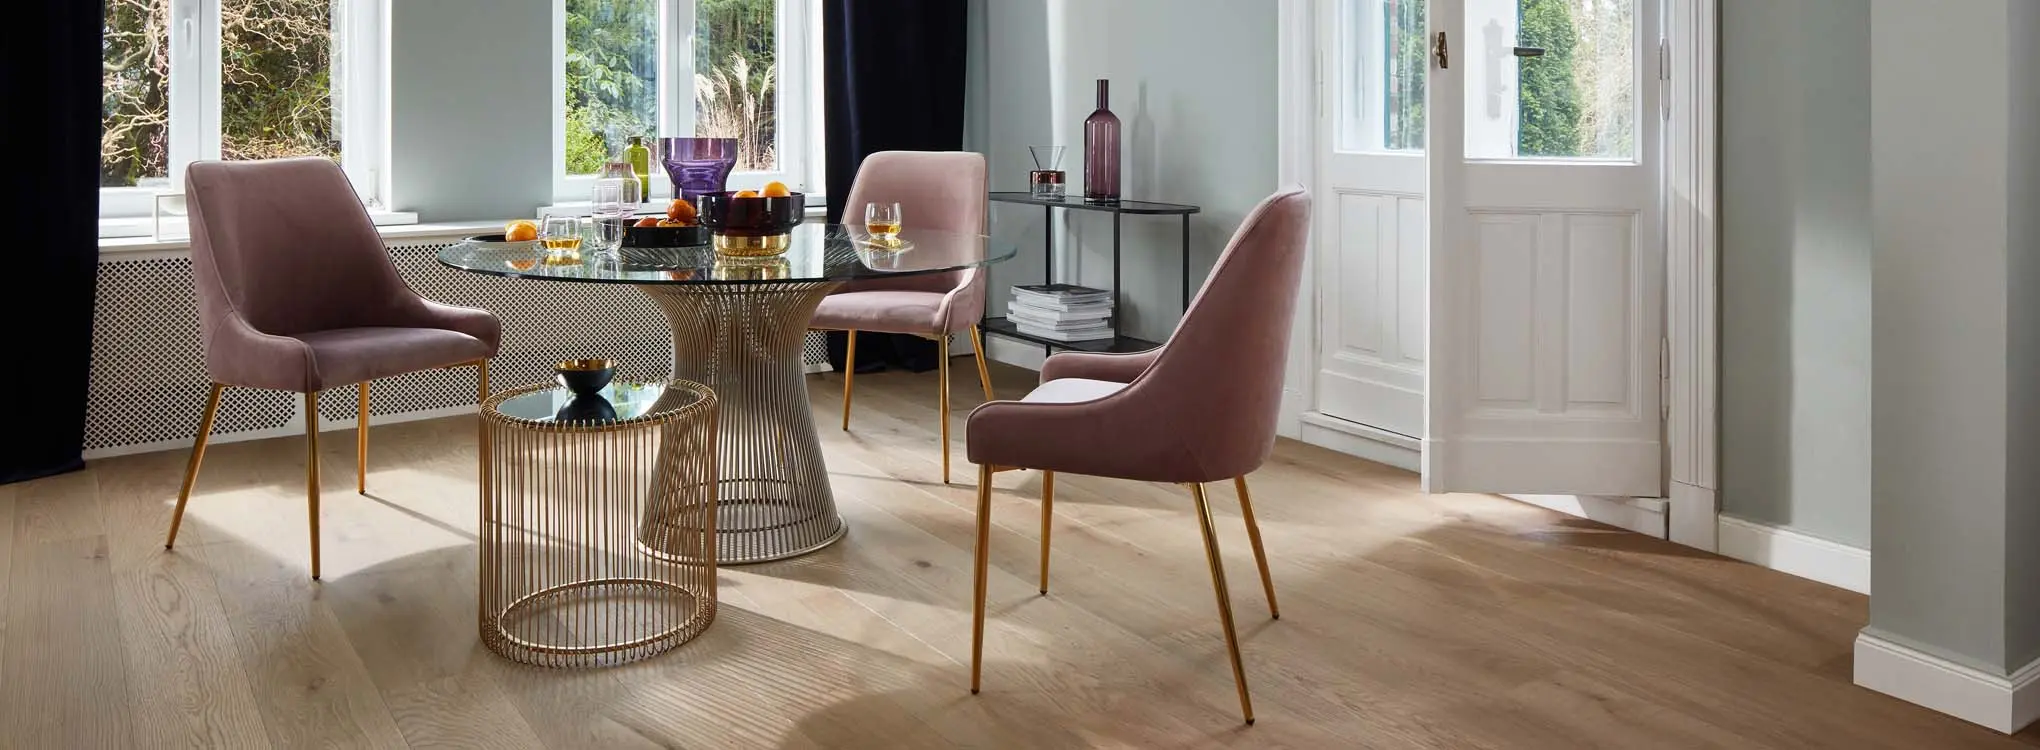 klassisk stue med rundt glassbord og rosa spisestuestoler